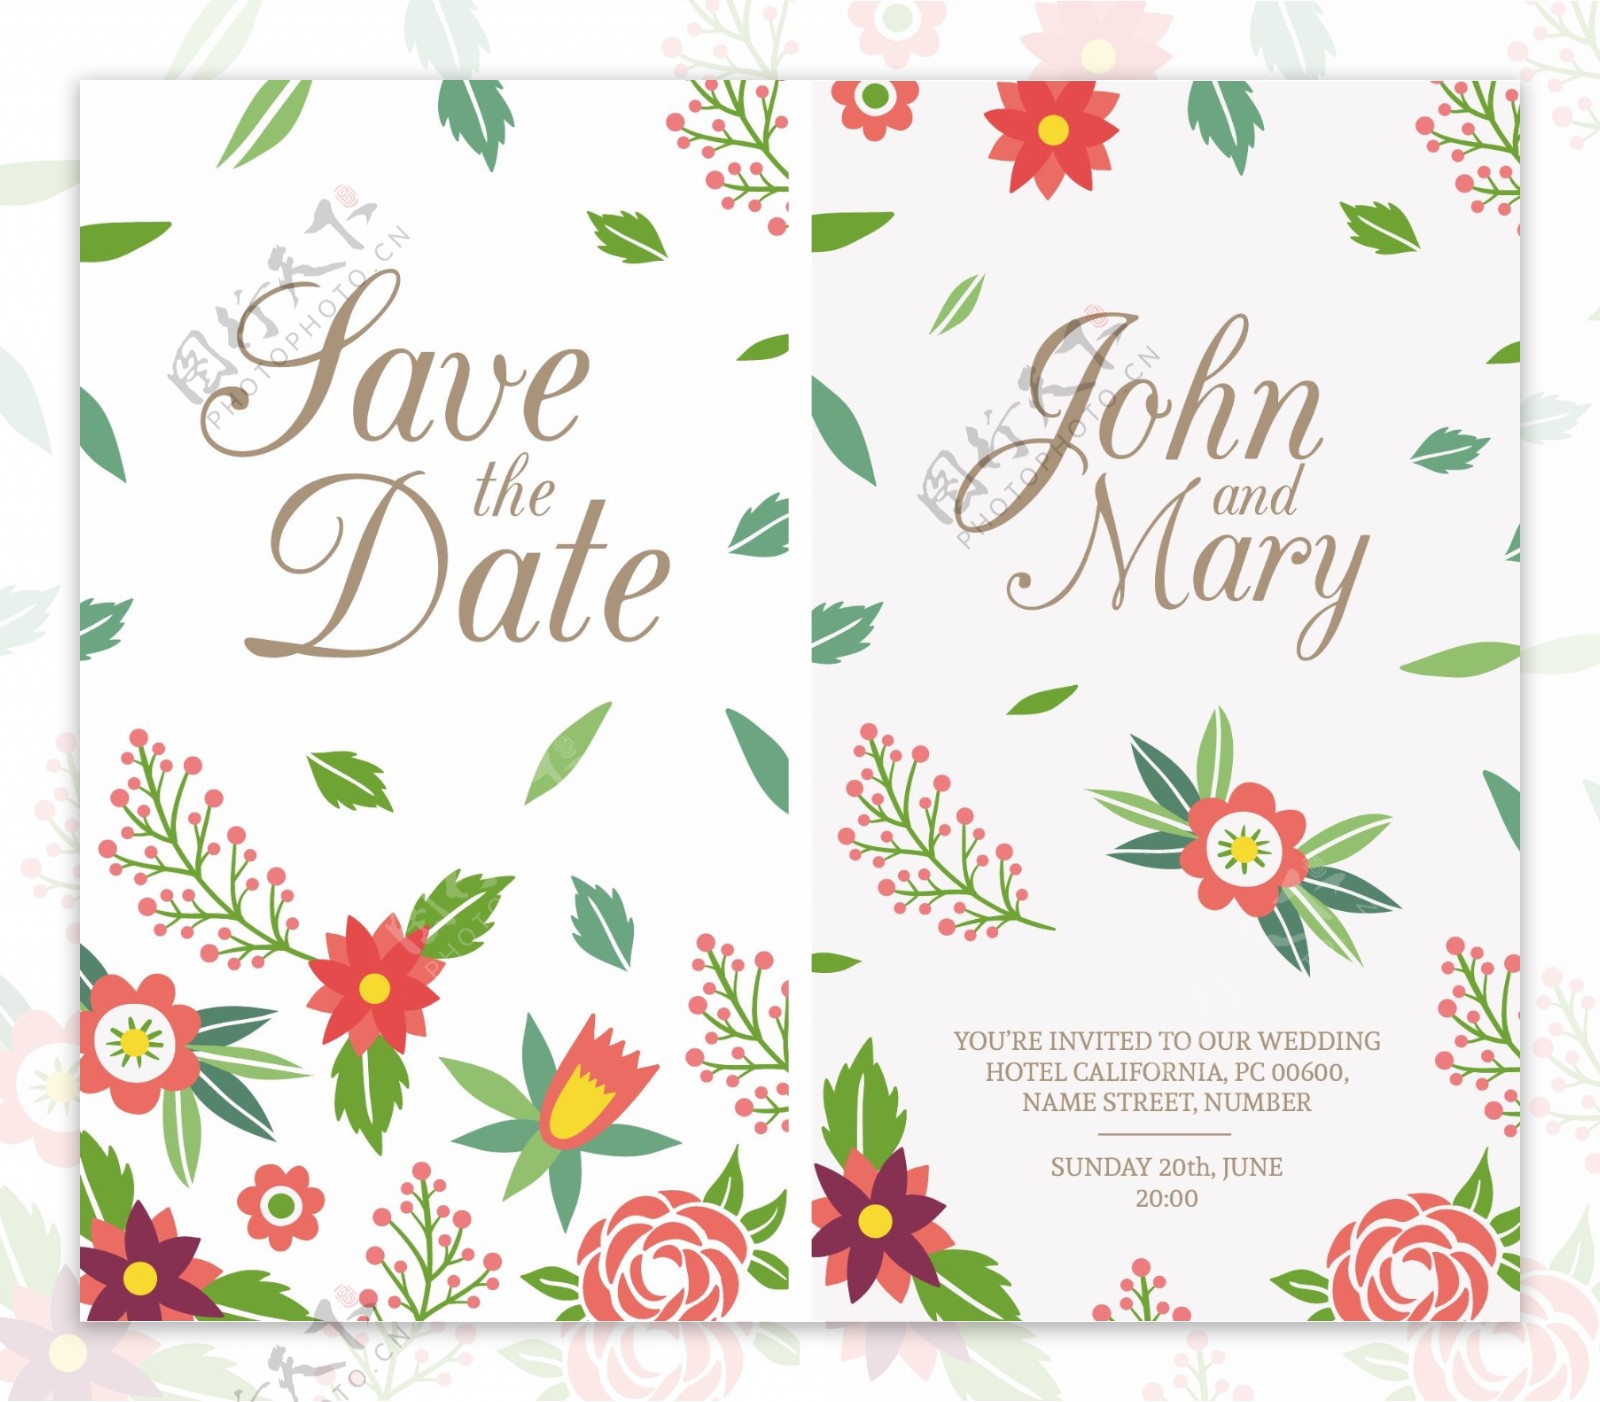 带有叶子和花朵细节的婚礼卡片